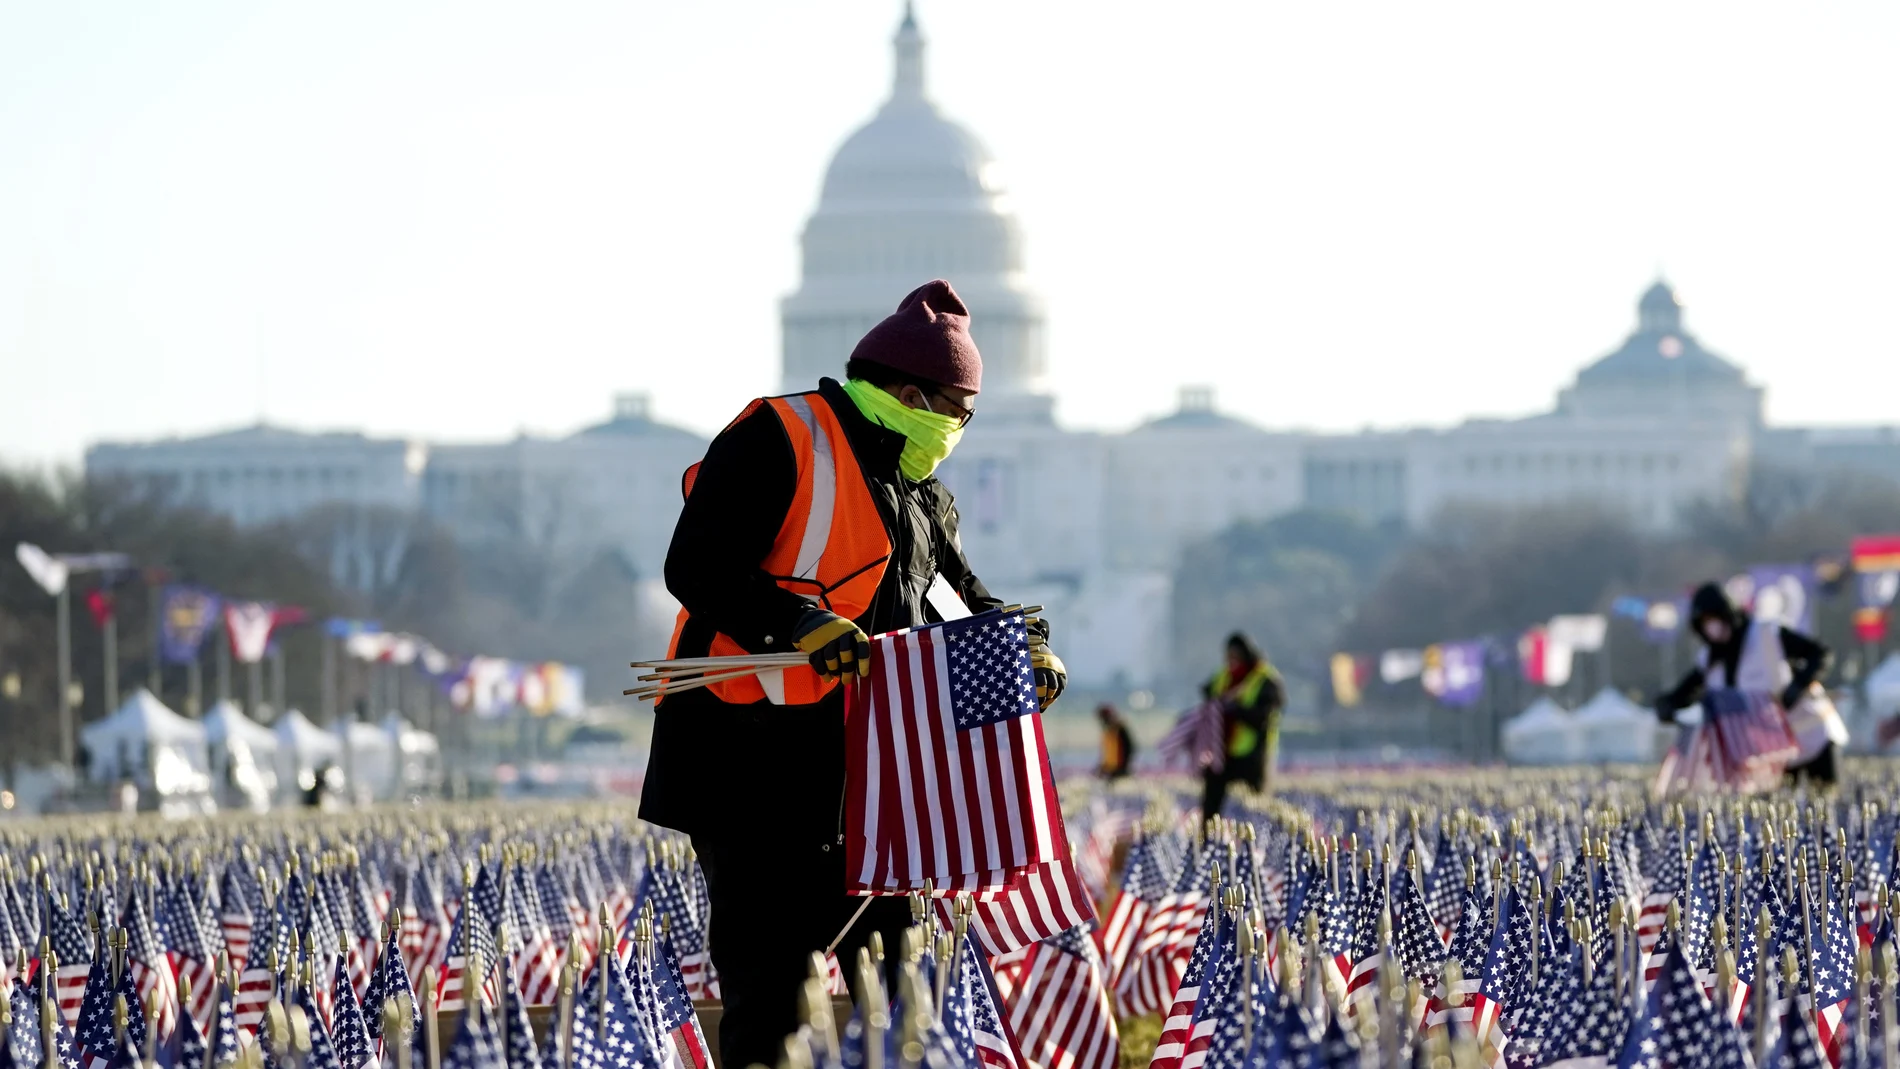 Los trabajadores recogen las 200.000 banderas frente al Capitolio, donde tuvo lugar la investidura del presidente Joe Biden